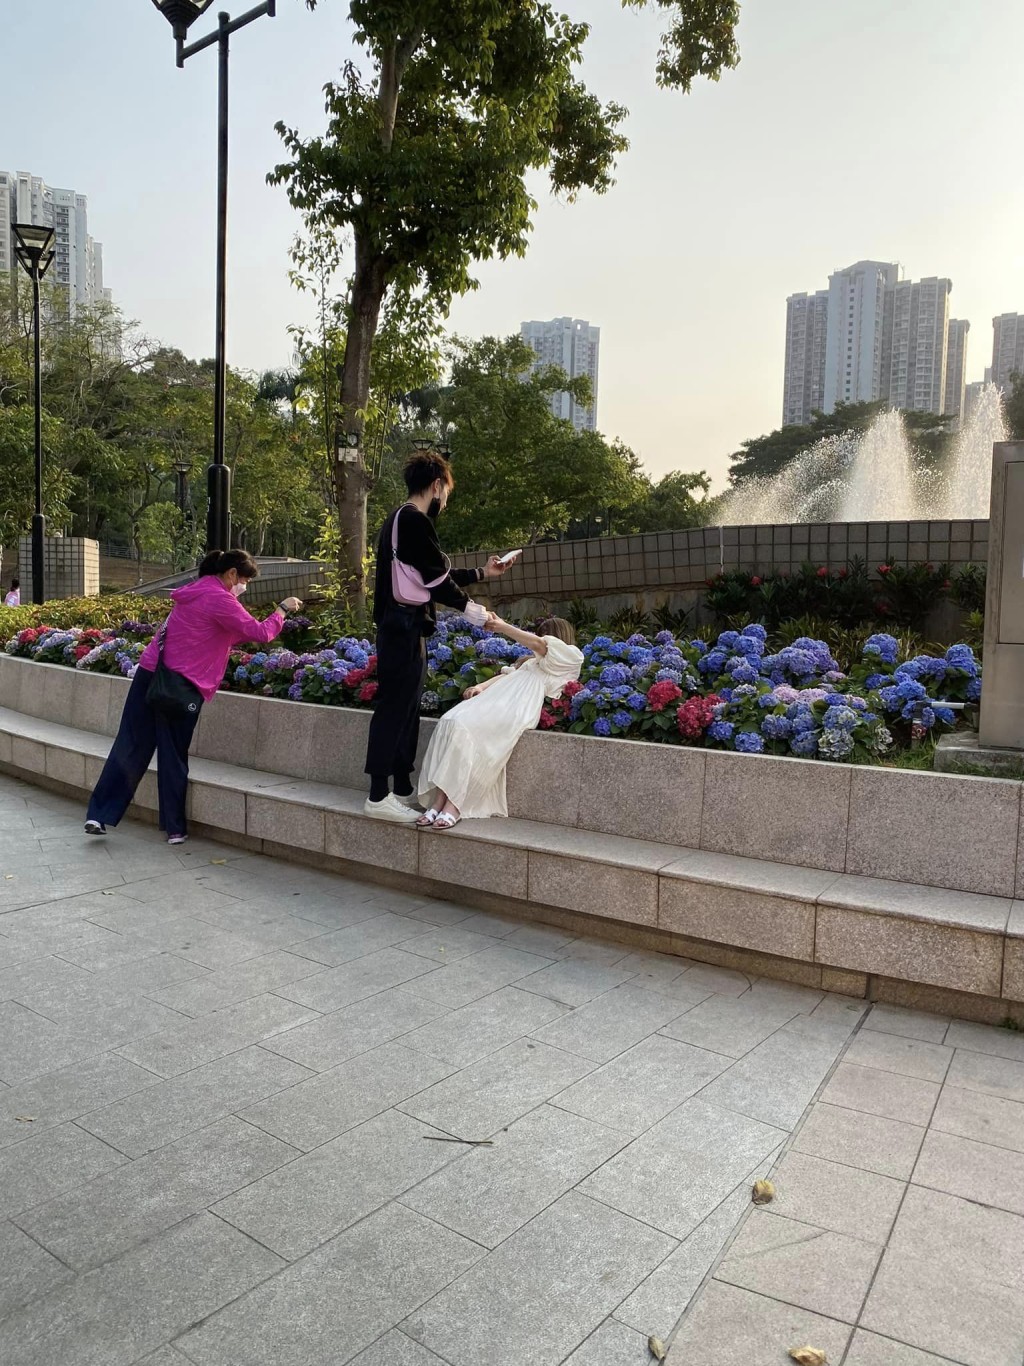 「瞓身」压在绣球花上让男方拍照。（图片来源：FB @ 香港风景摄影会）